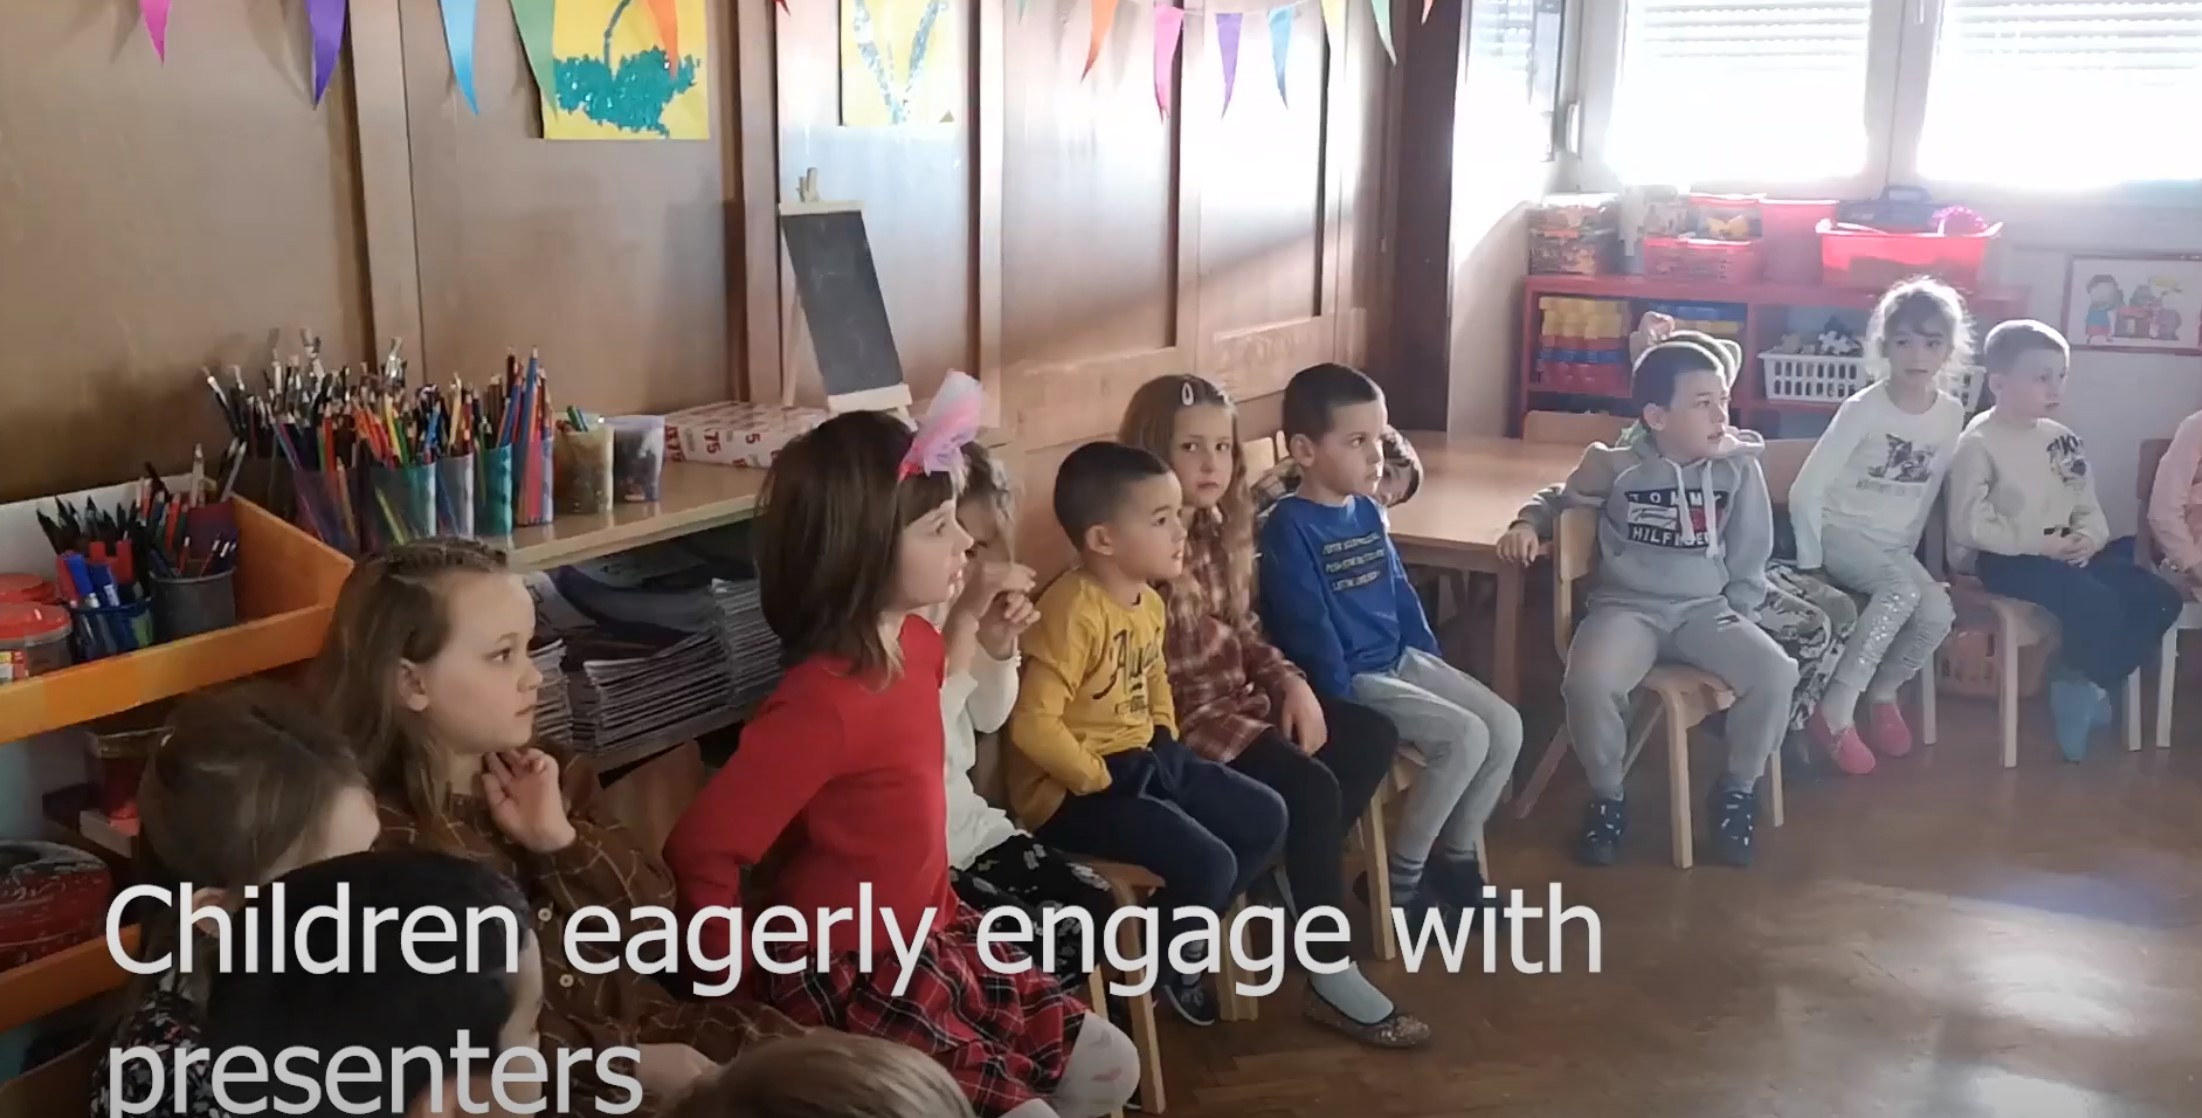 Montenegro Dolphin Watch Presenters Interacting With Preschool Children